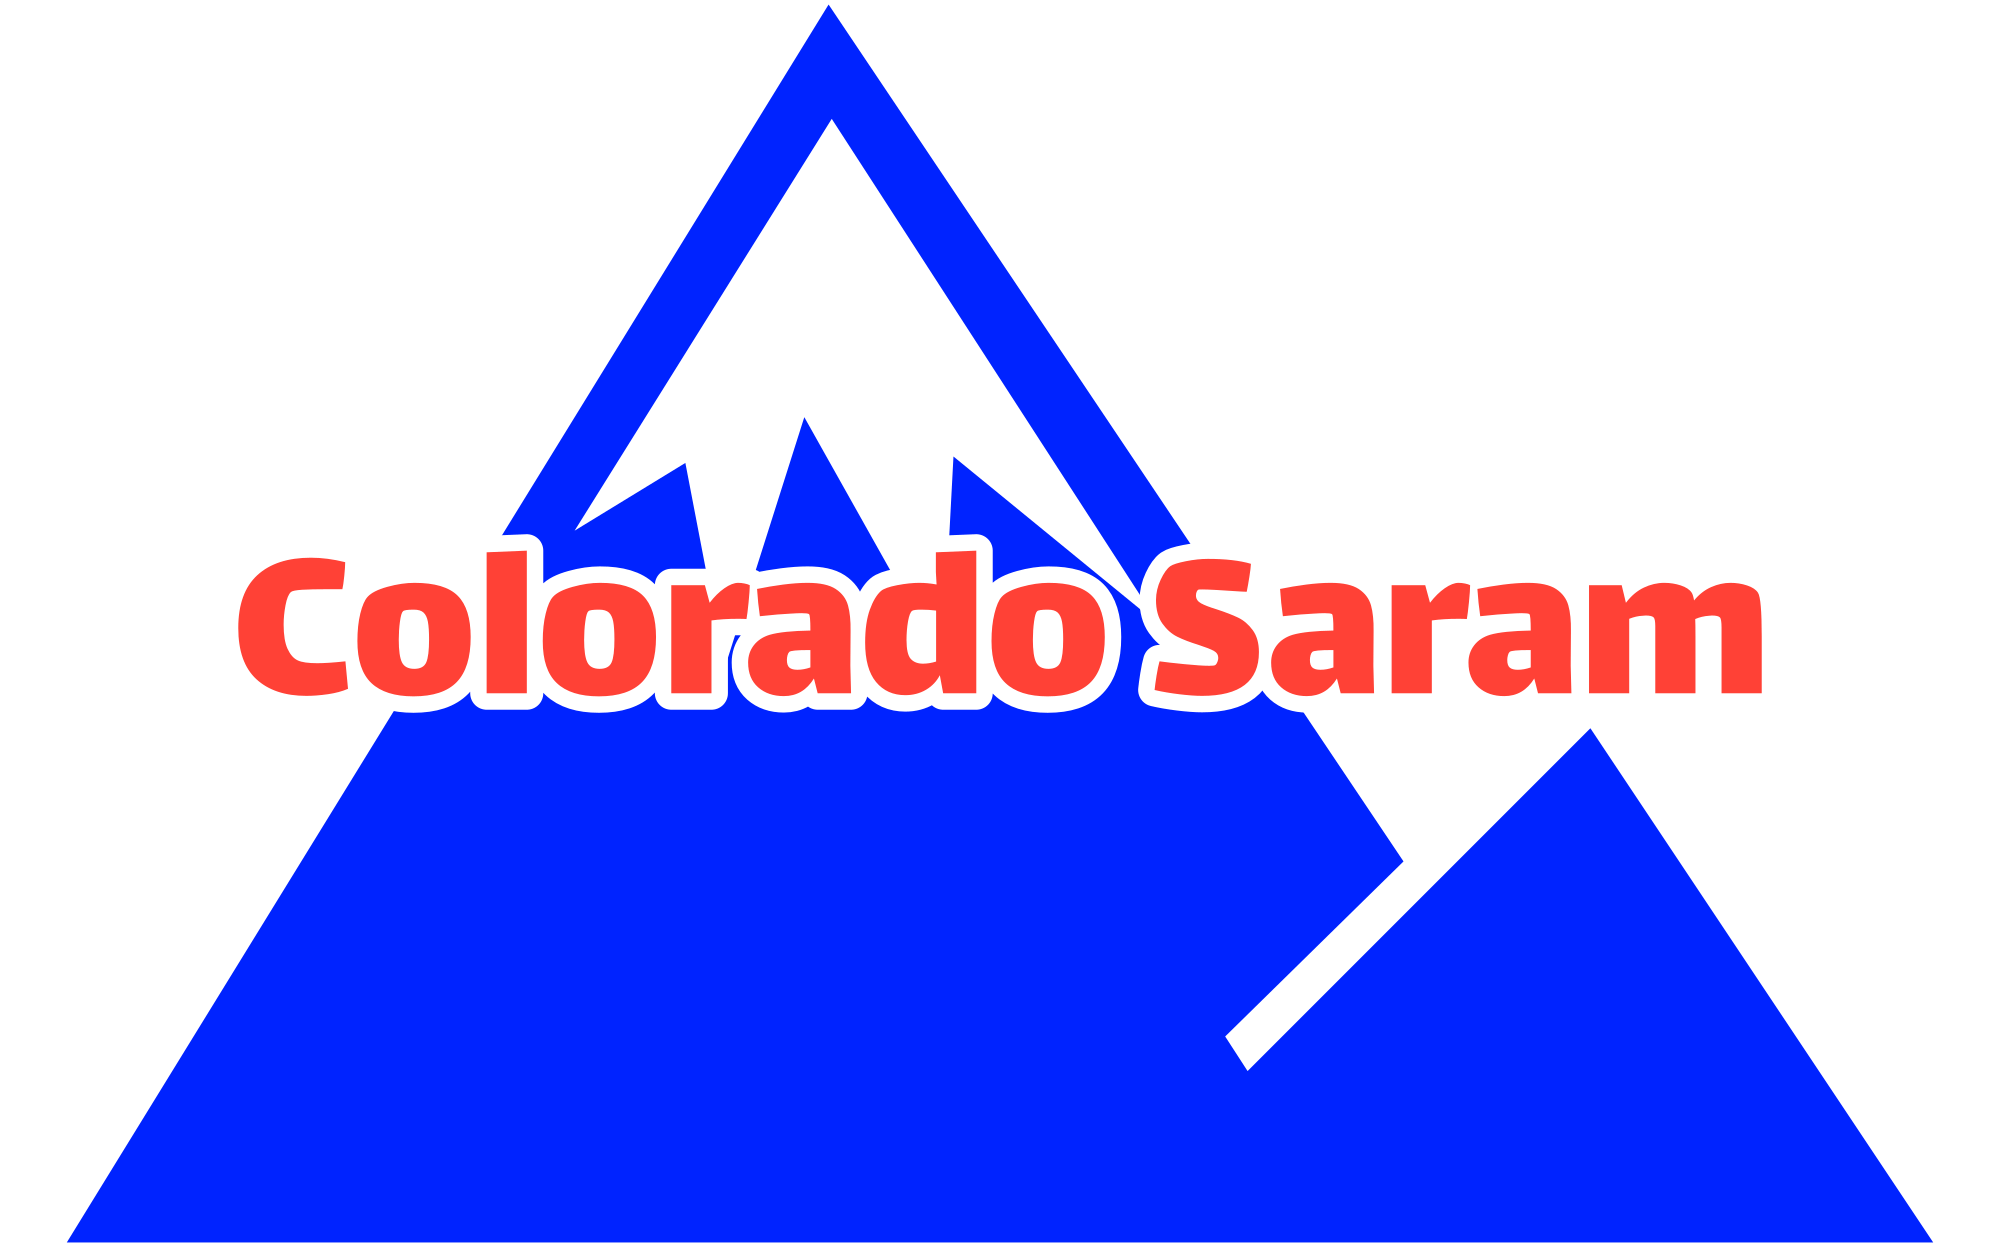 Colorado Saram Mountain logo with no tagline